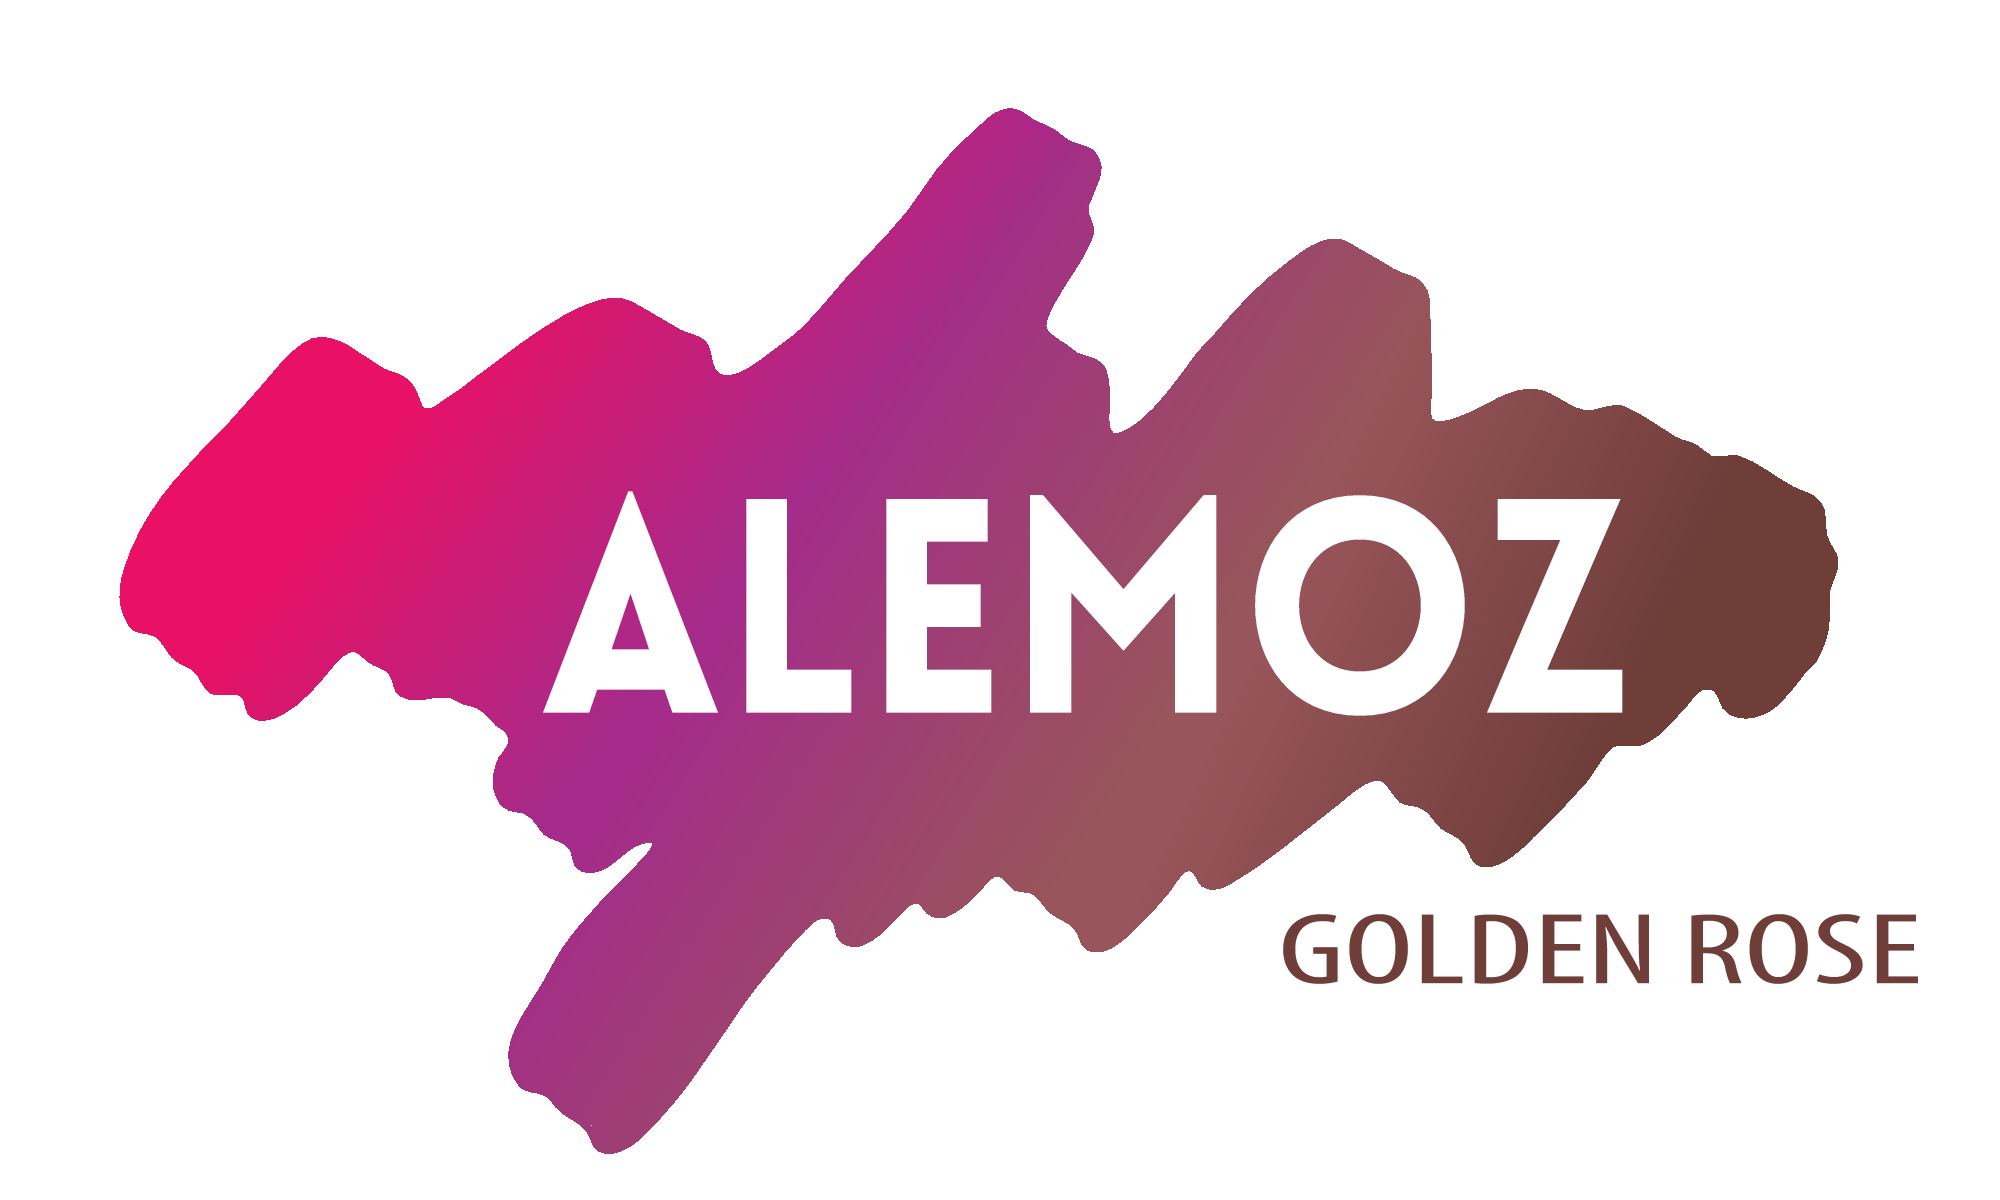 Odkryj co mamy do zaoferowania w naszym sklepie online Golden Rose Alemoz!